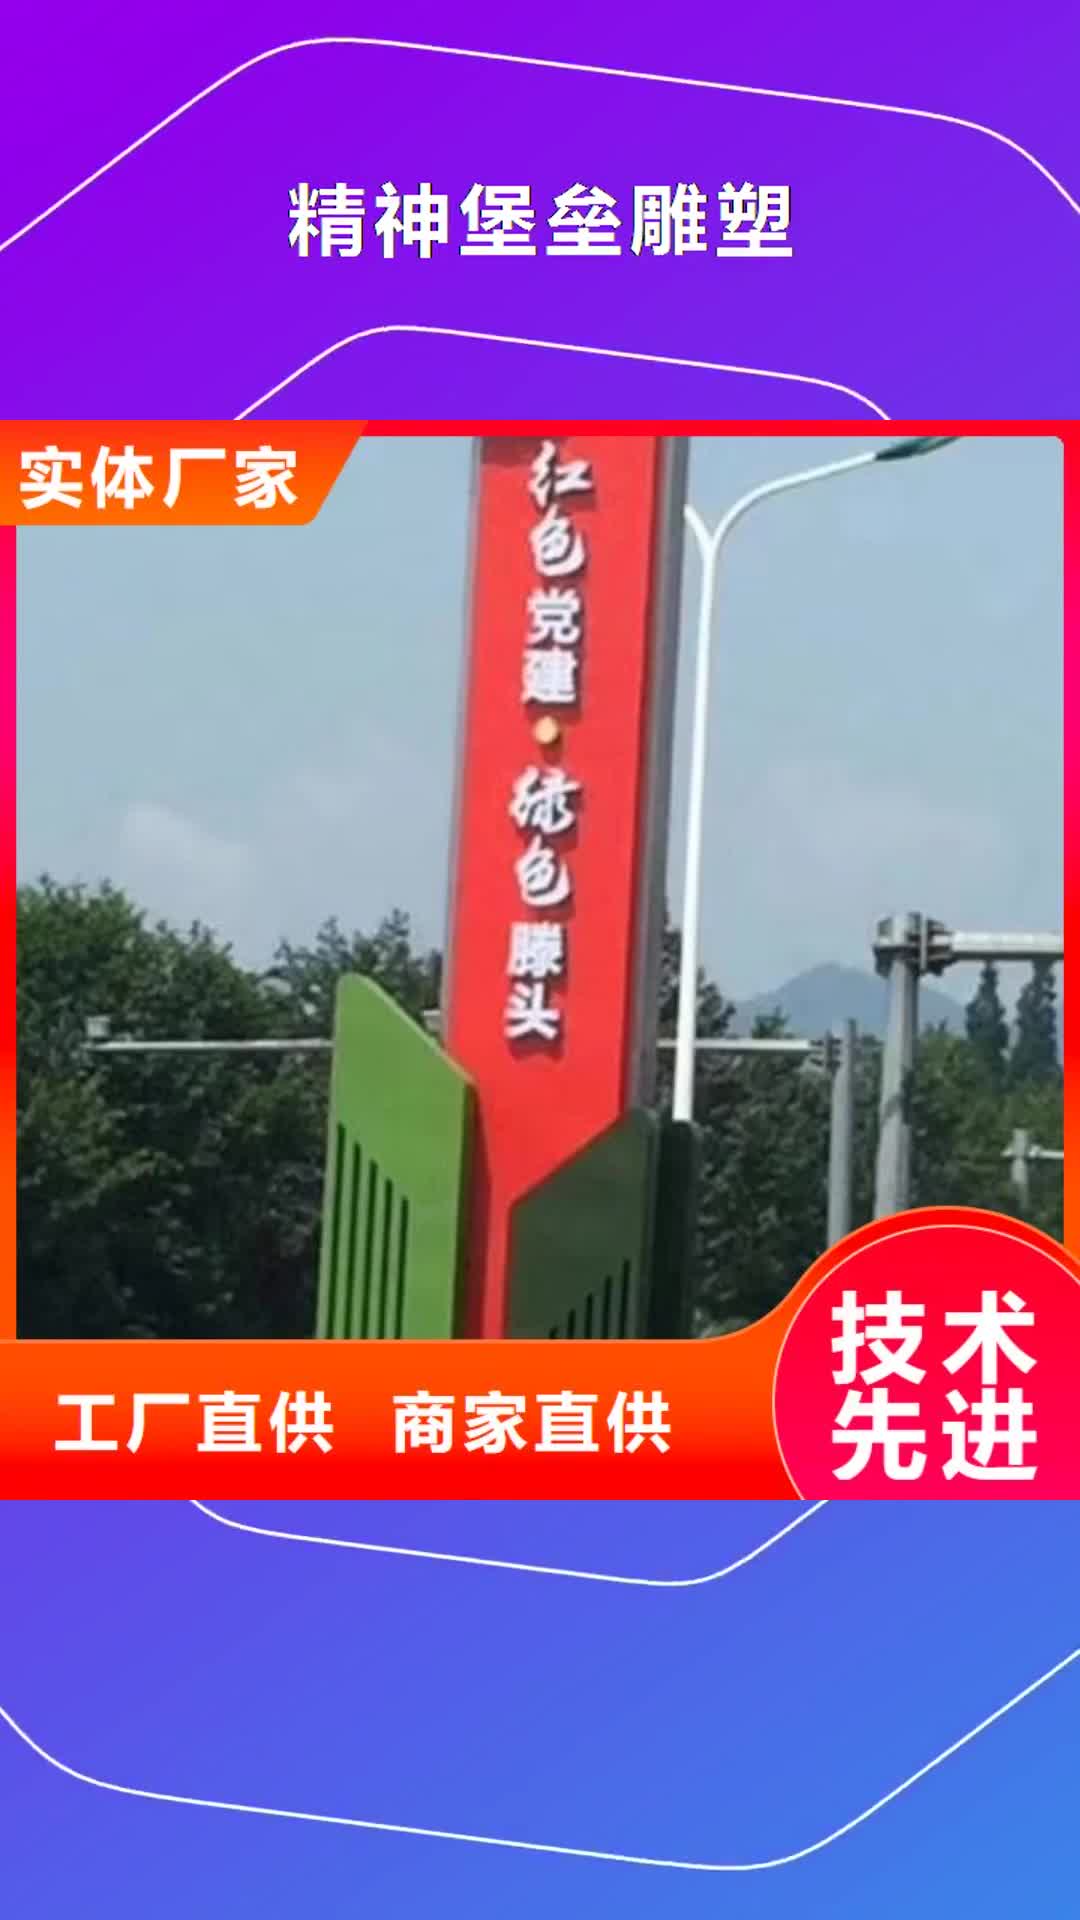 牡丹江【精神堡垒雕塑】 社区公示栏质量安全可靠